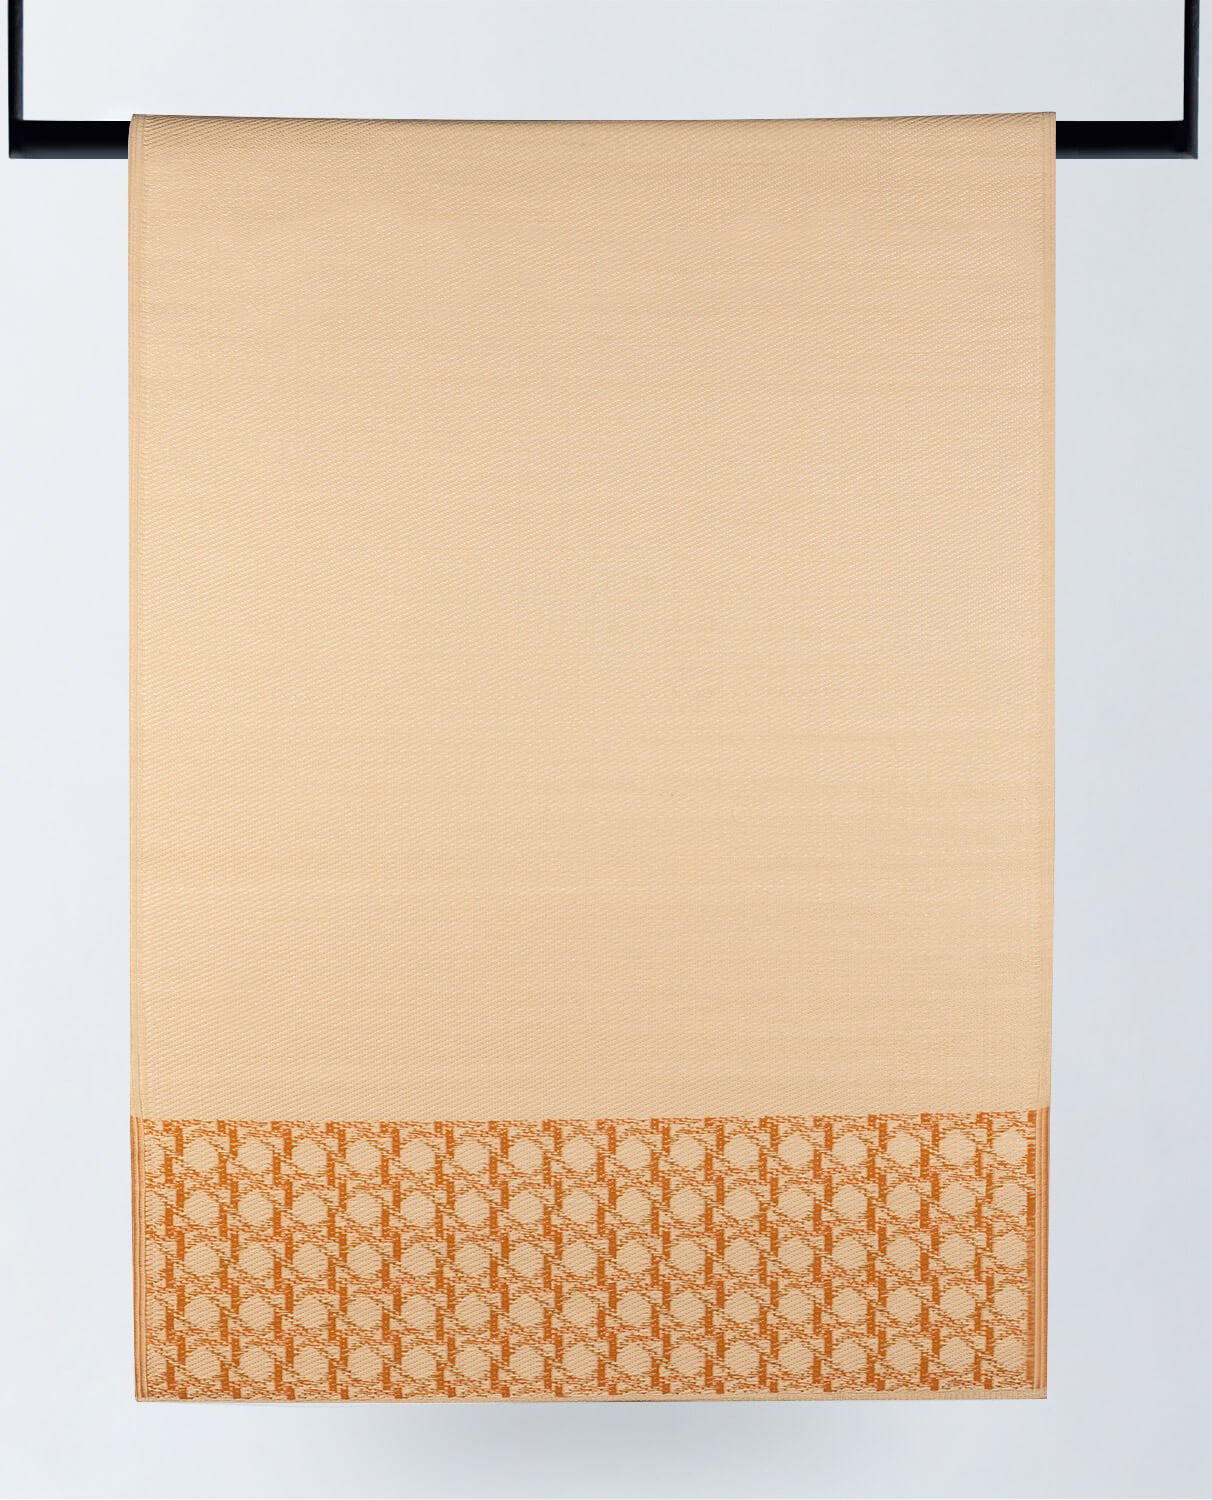 Tappeto per Esterni in Polipropilene (213x150 cm) Tramuntan, immagine della galleria 1